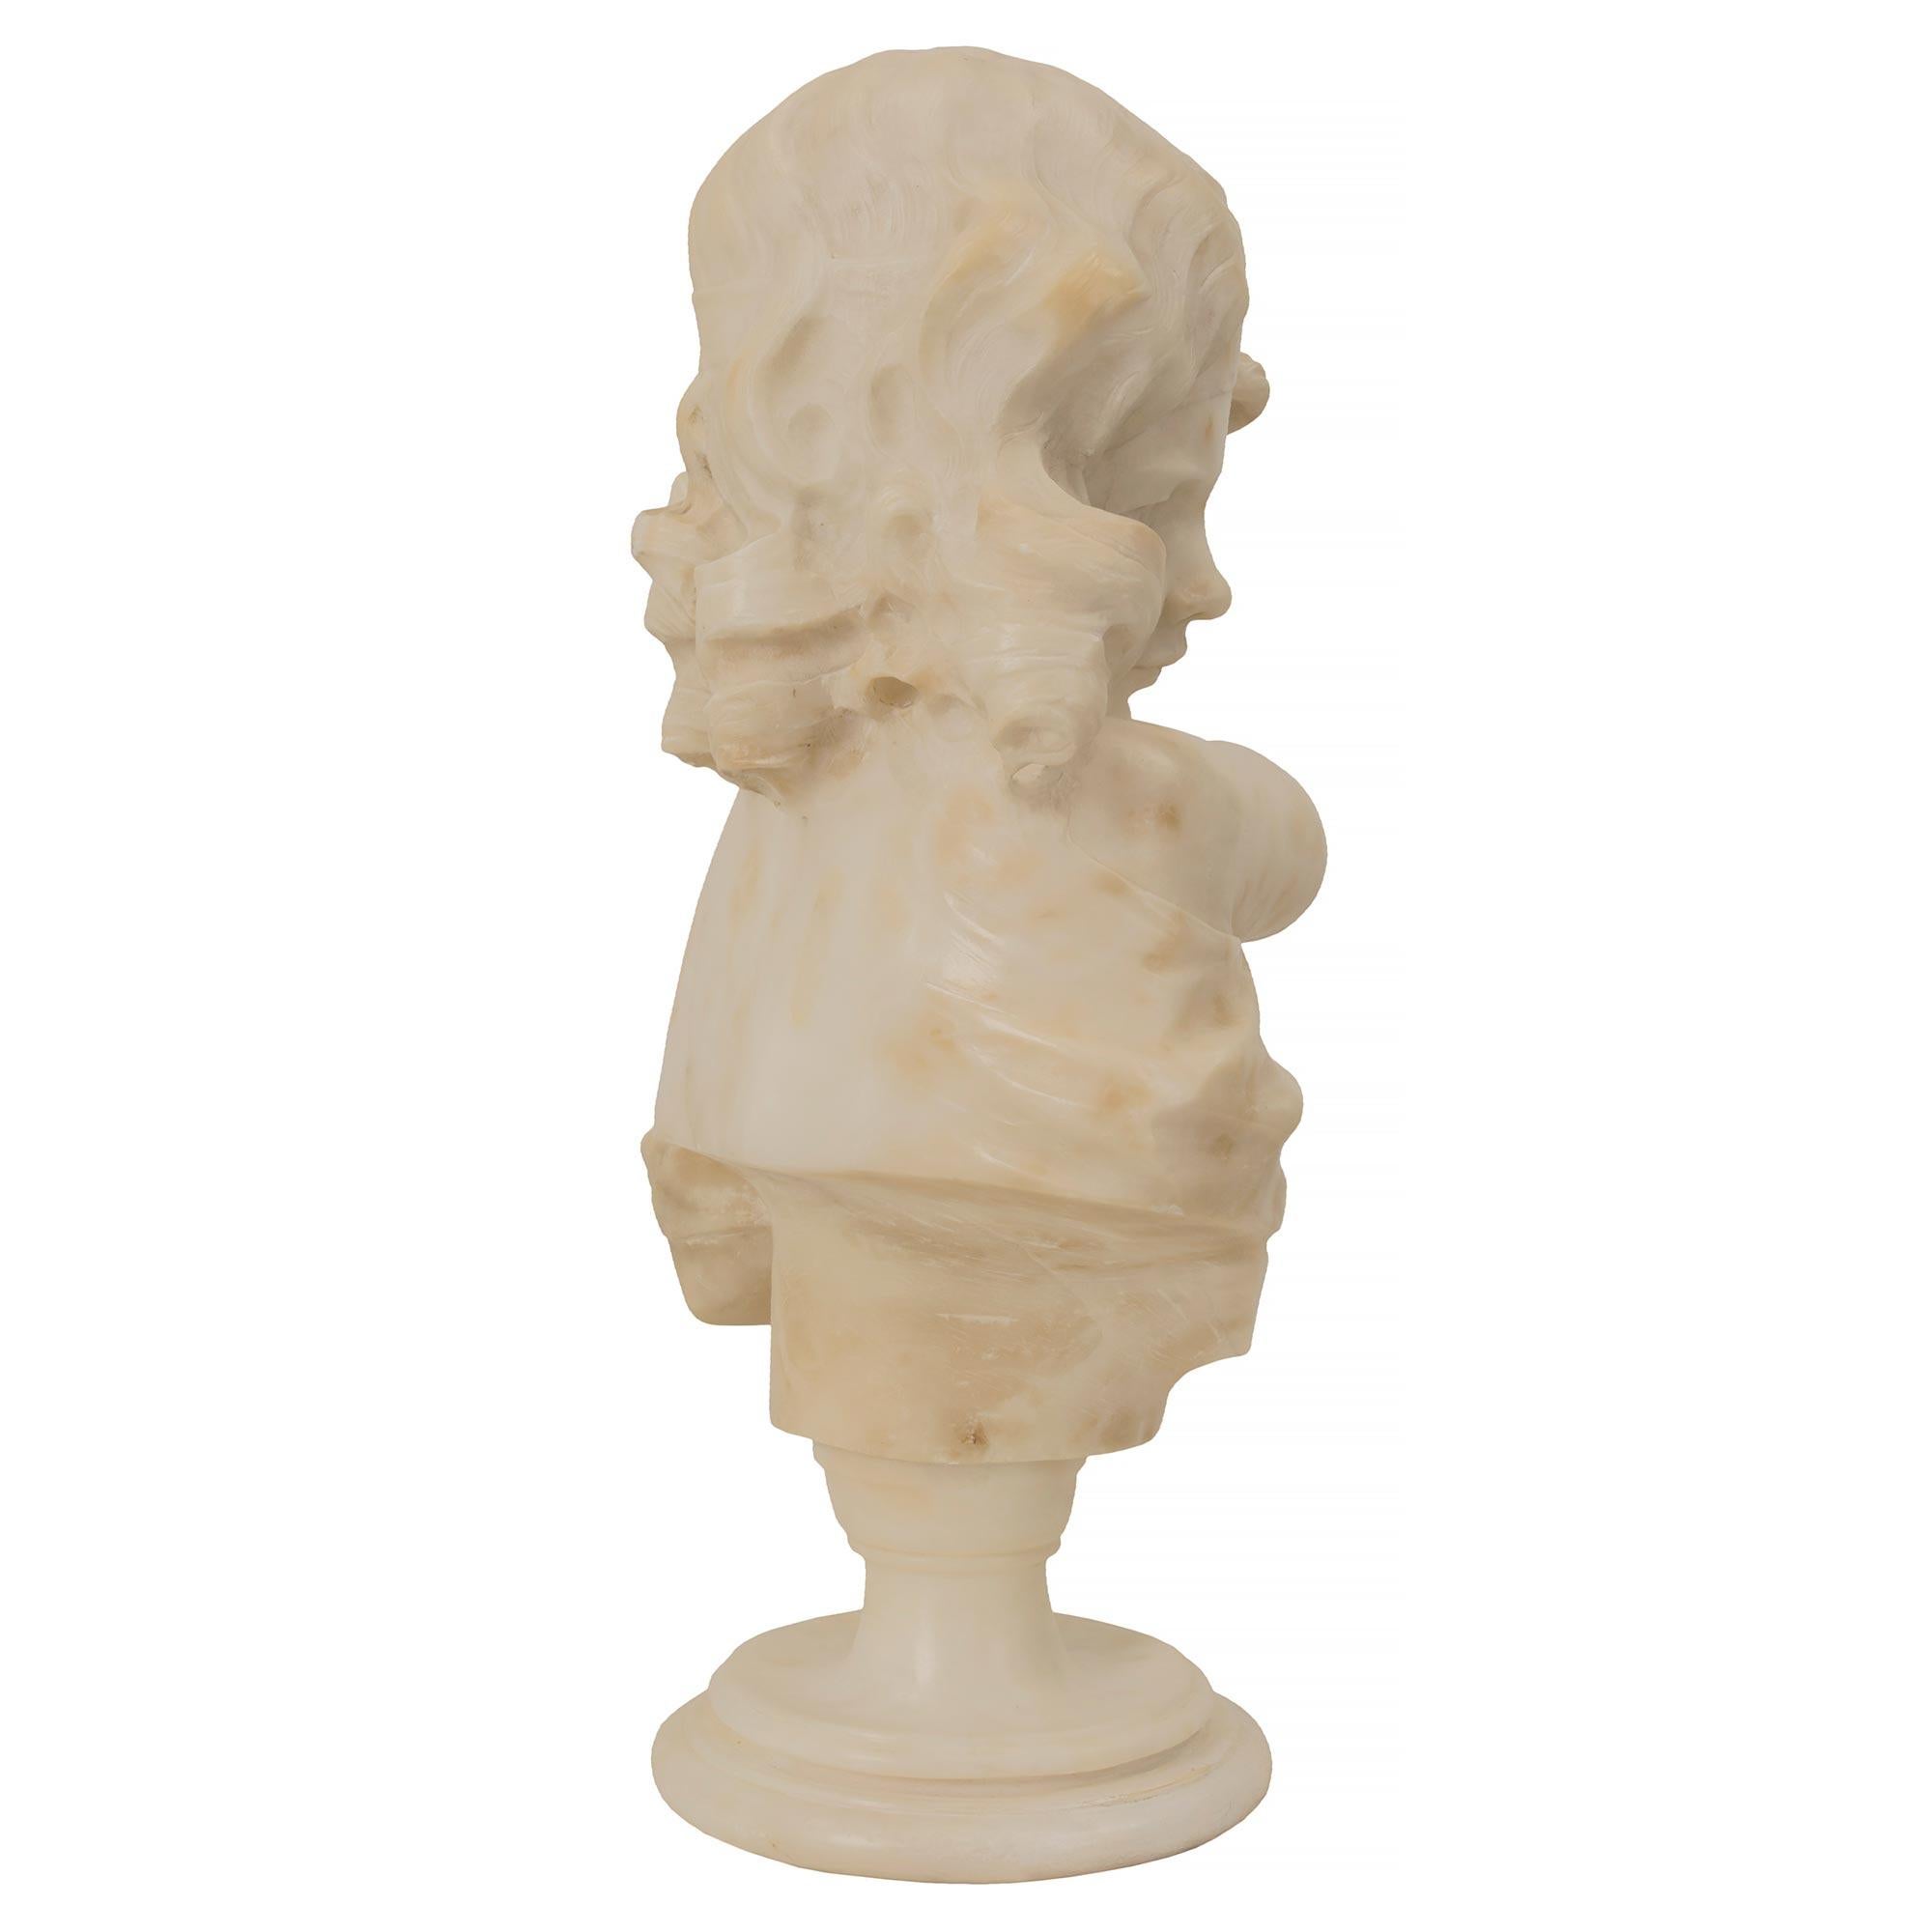 Magnifique buste de jeune femme en albâtre datant du 19e siècle. Le buste est surélevé par une base circulaire tachetée sous le piédestal en forme de socle. La belle jeune fille tient un carquois avec des flèches dans une main et a l'autre bras levé